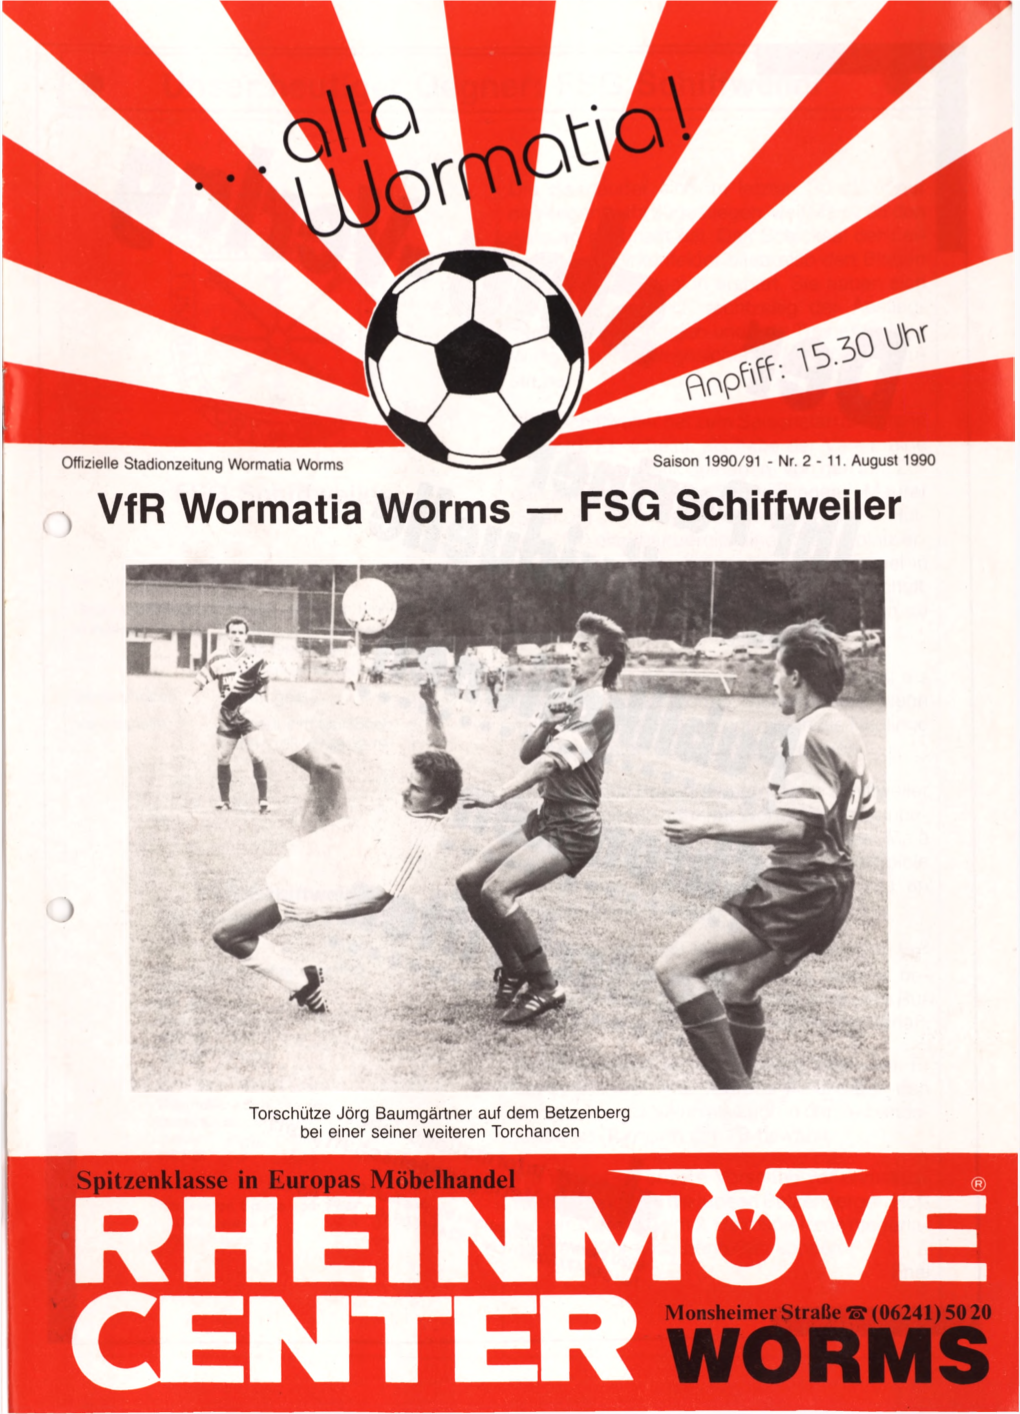 Vfr Wormatia Worms — FSG Schiffweiler